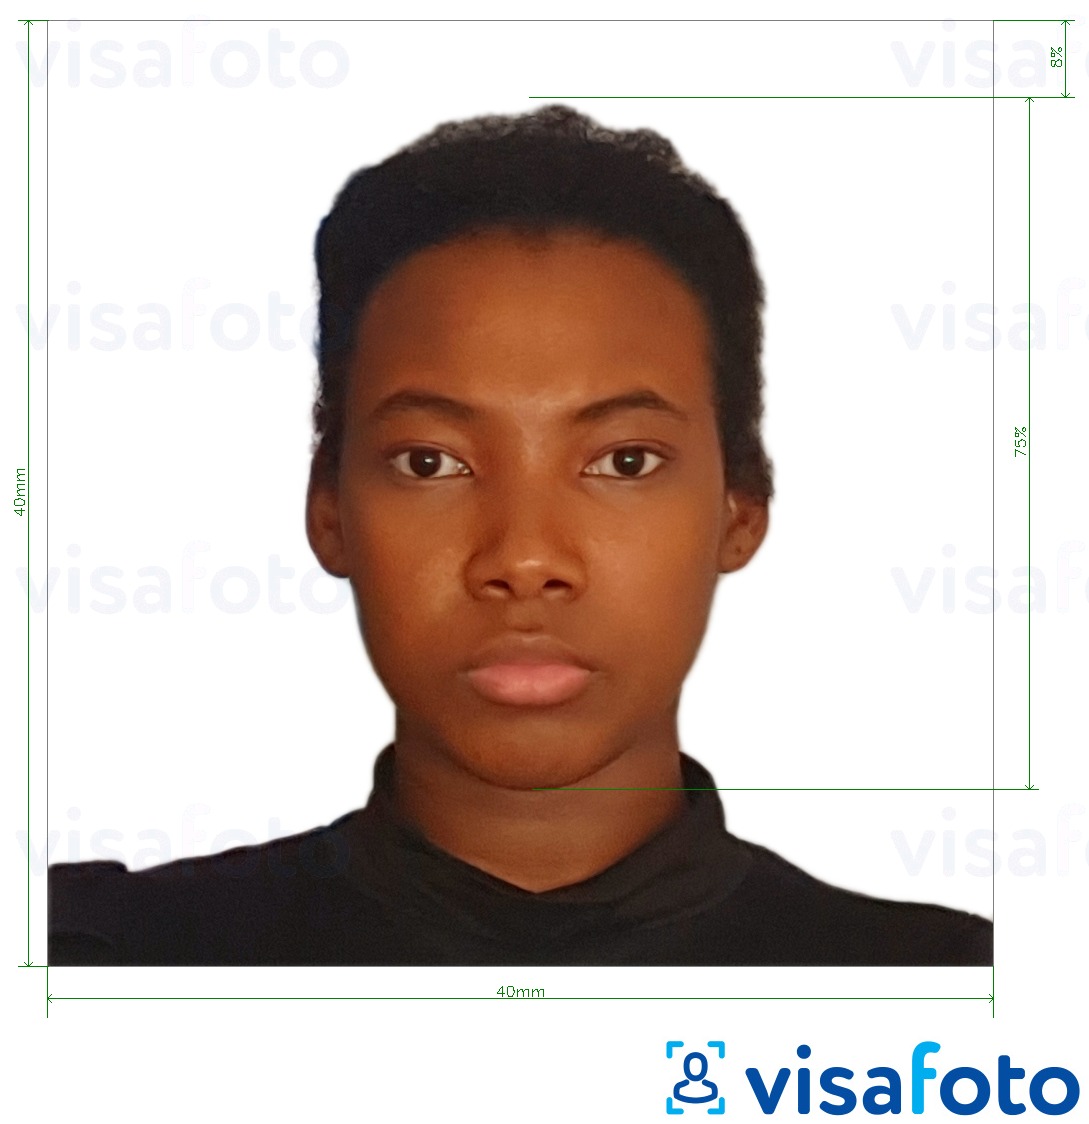 Shembulli i fotos per Pasaporta Kamerun 4x4 cm (40x40 mm) me specifikimet ekzakte